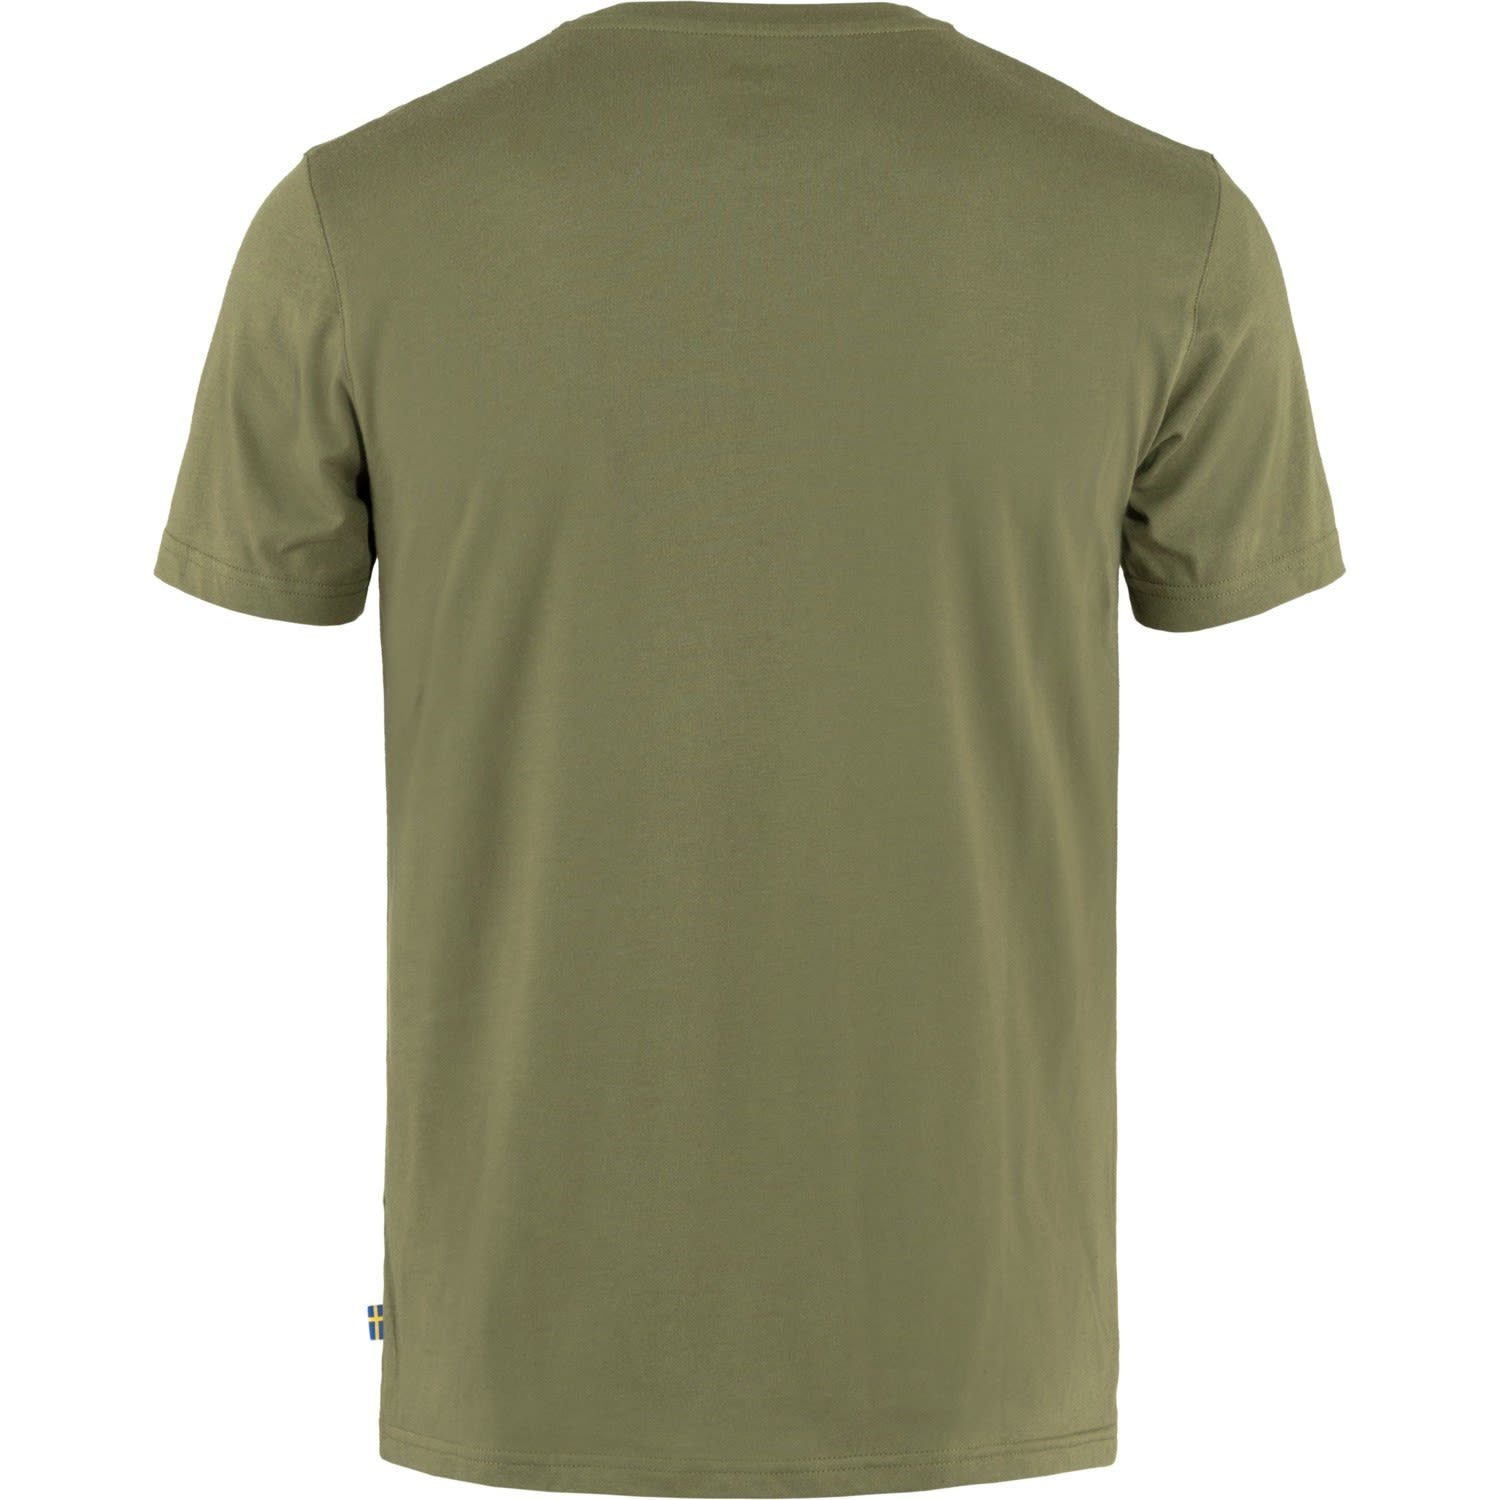 Herren T-Shirt Kurzarm-Shirt T-shirt M Green Fjällräven Logo Caper Fjällräven